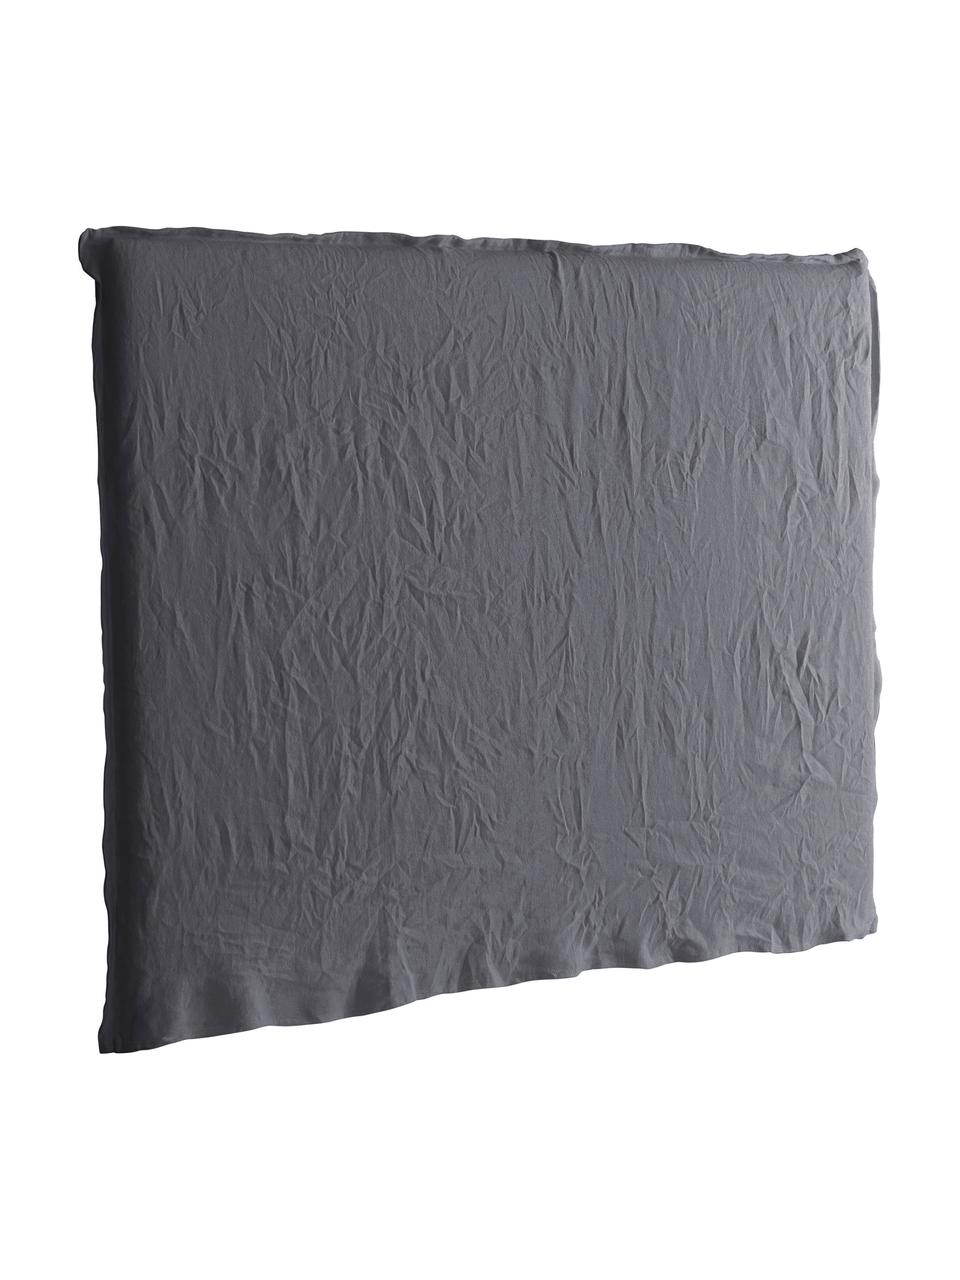 Cabecero de lino Palma, Tapizado: 100% lino, Gris oscuro, An 160 x Al 122 cm